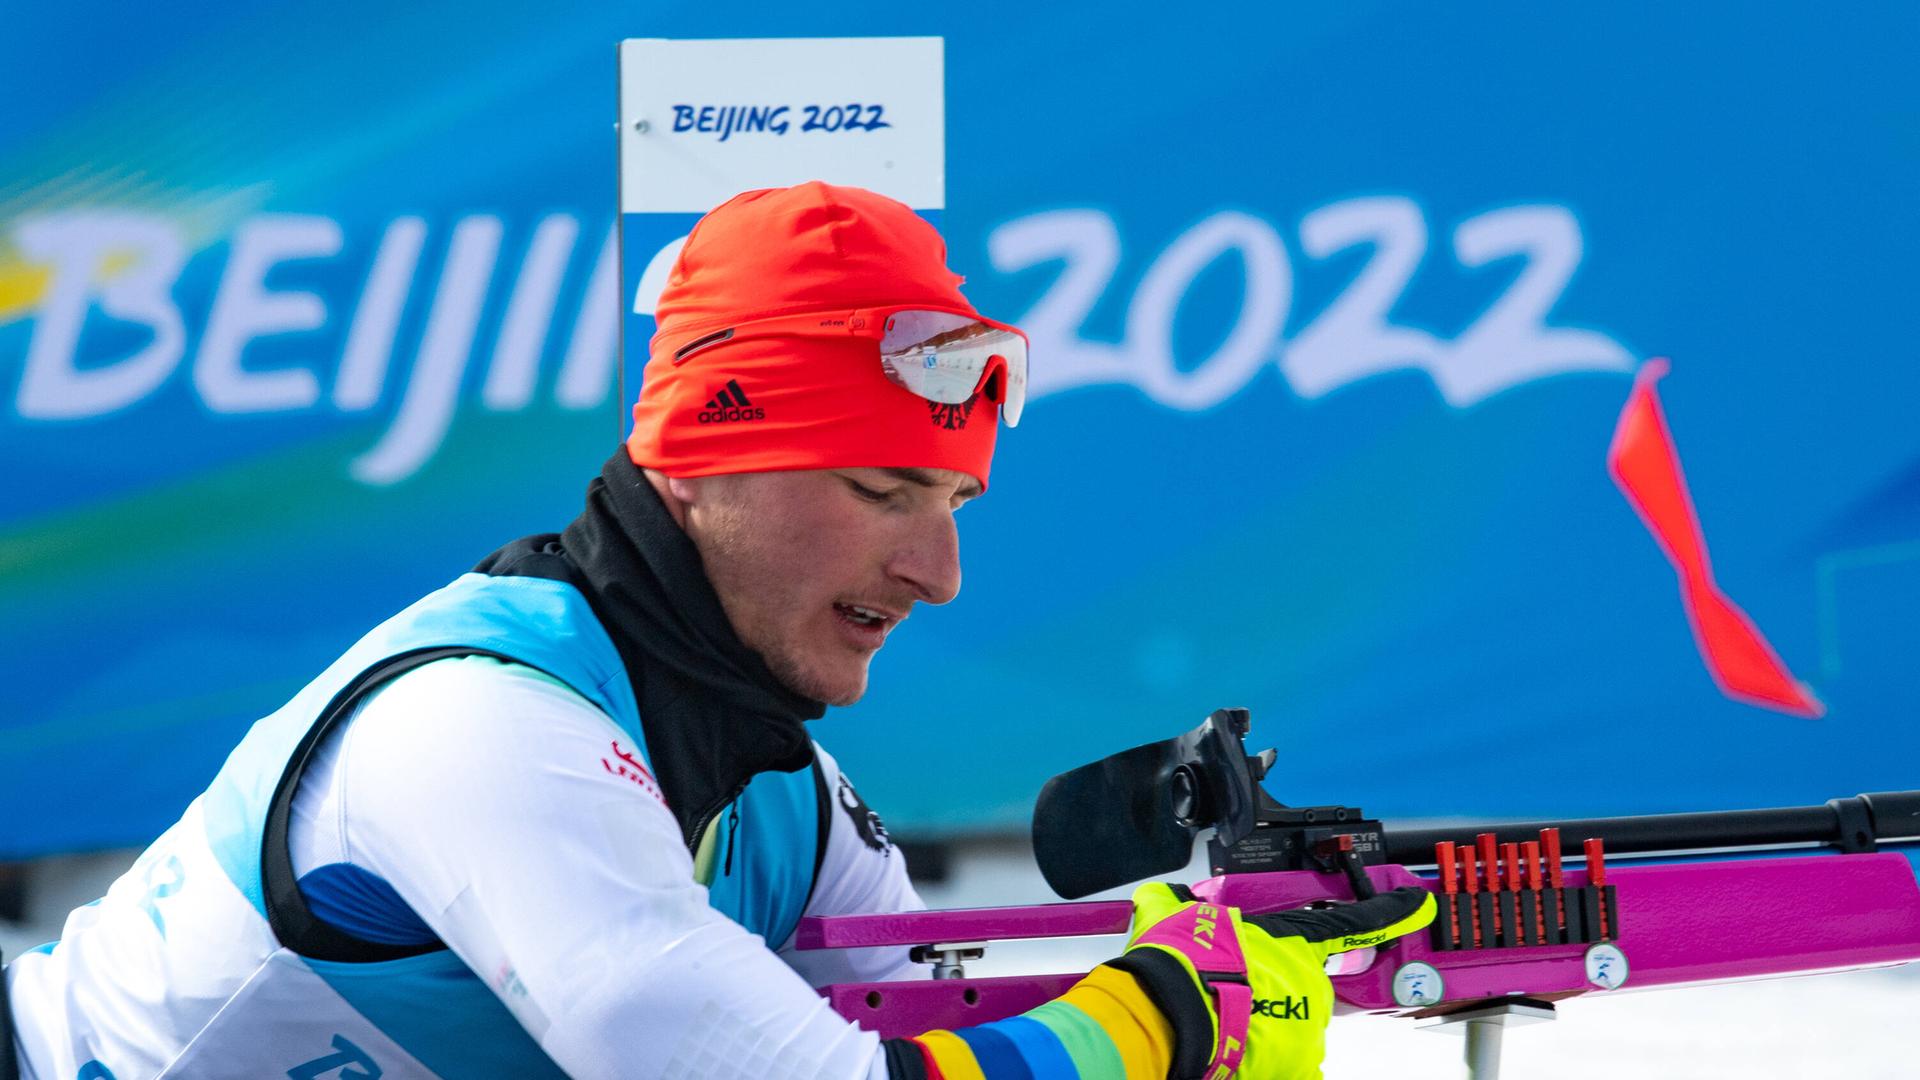 Einschiessen für den Para-Biathlet Marco Maier Maier bei den Paralympics in Peking 2022.